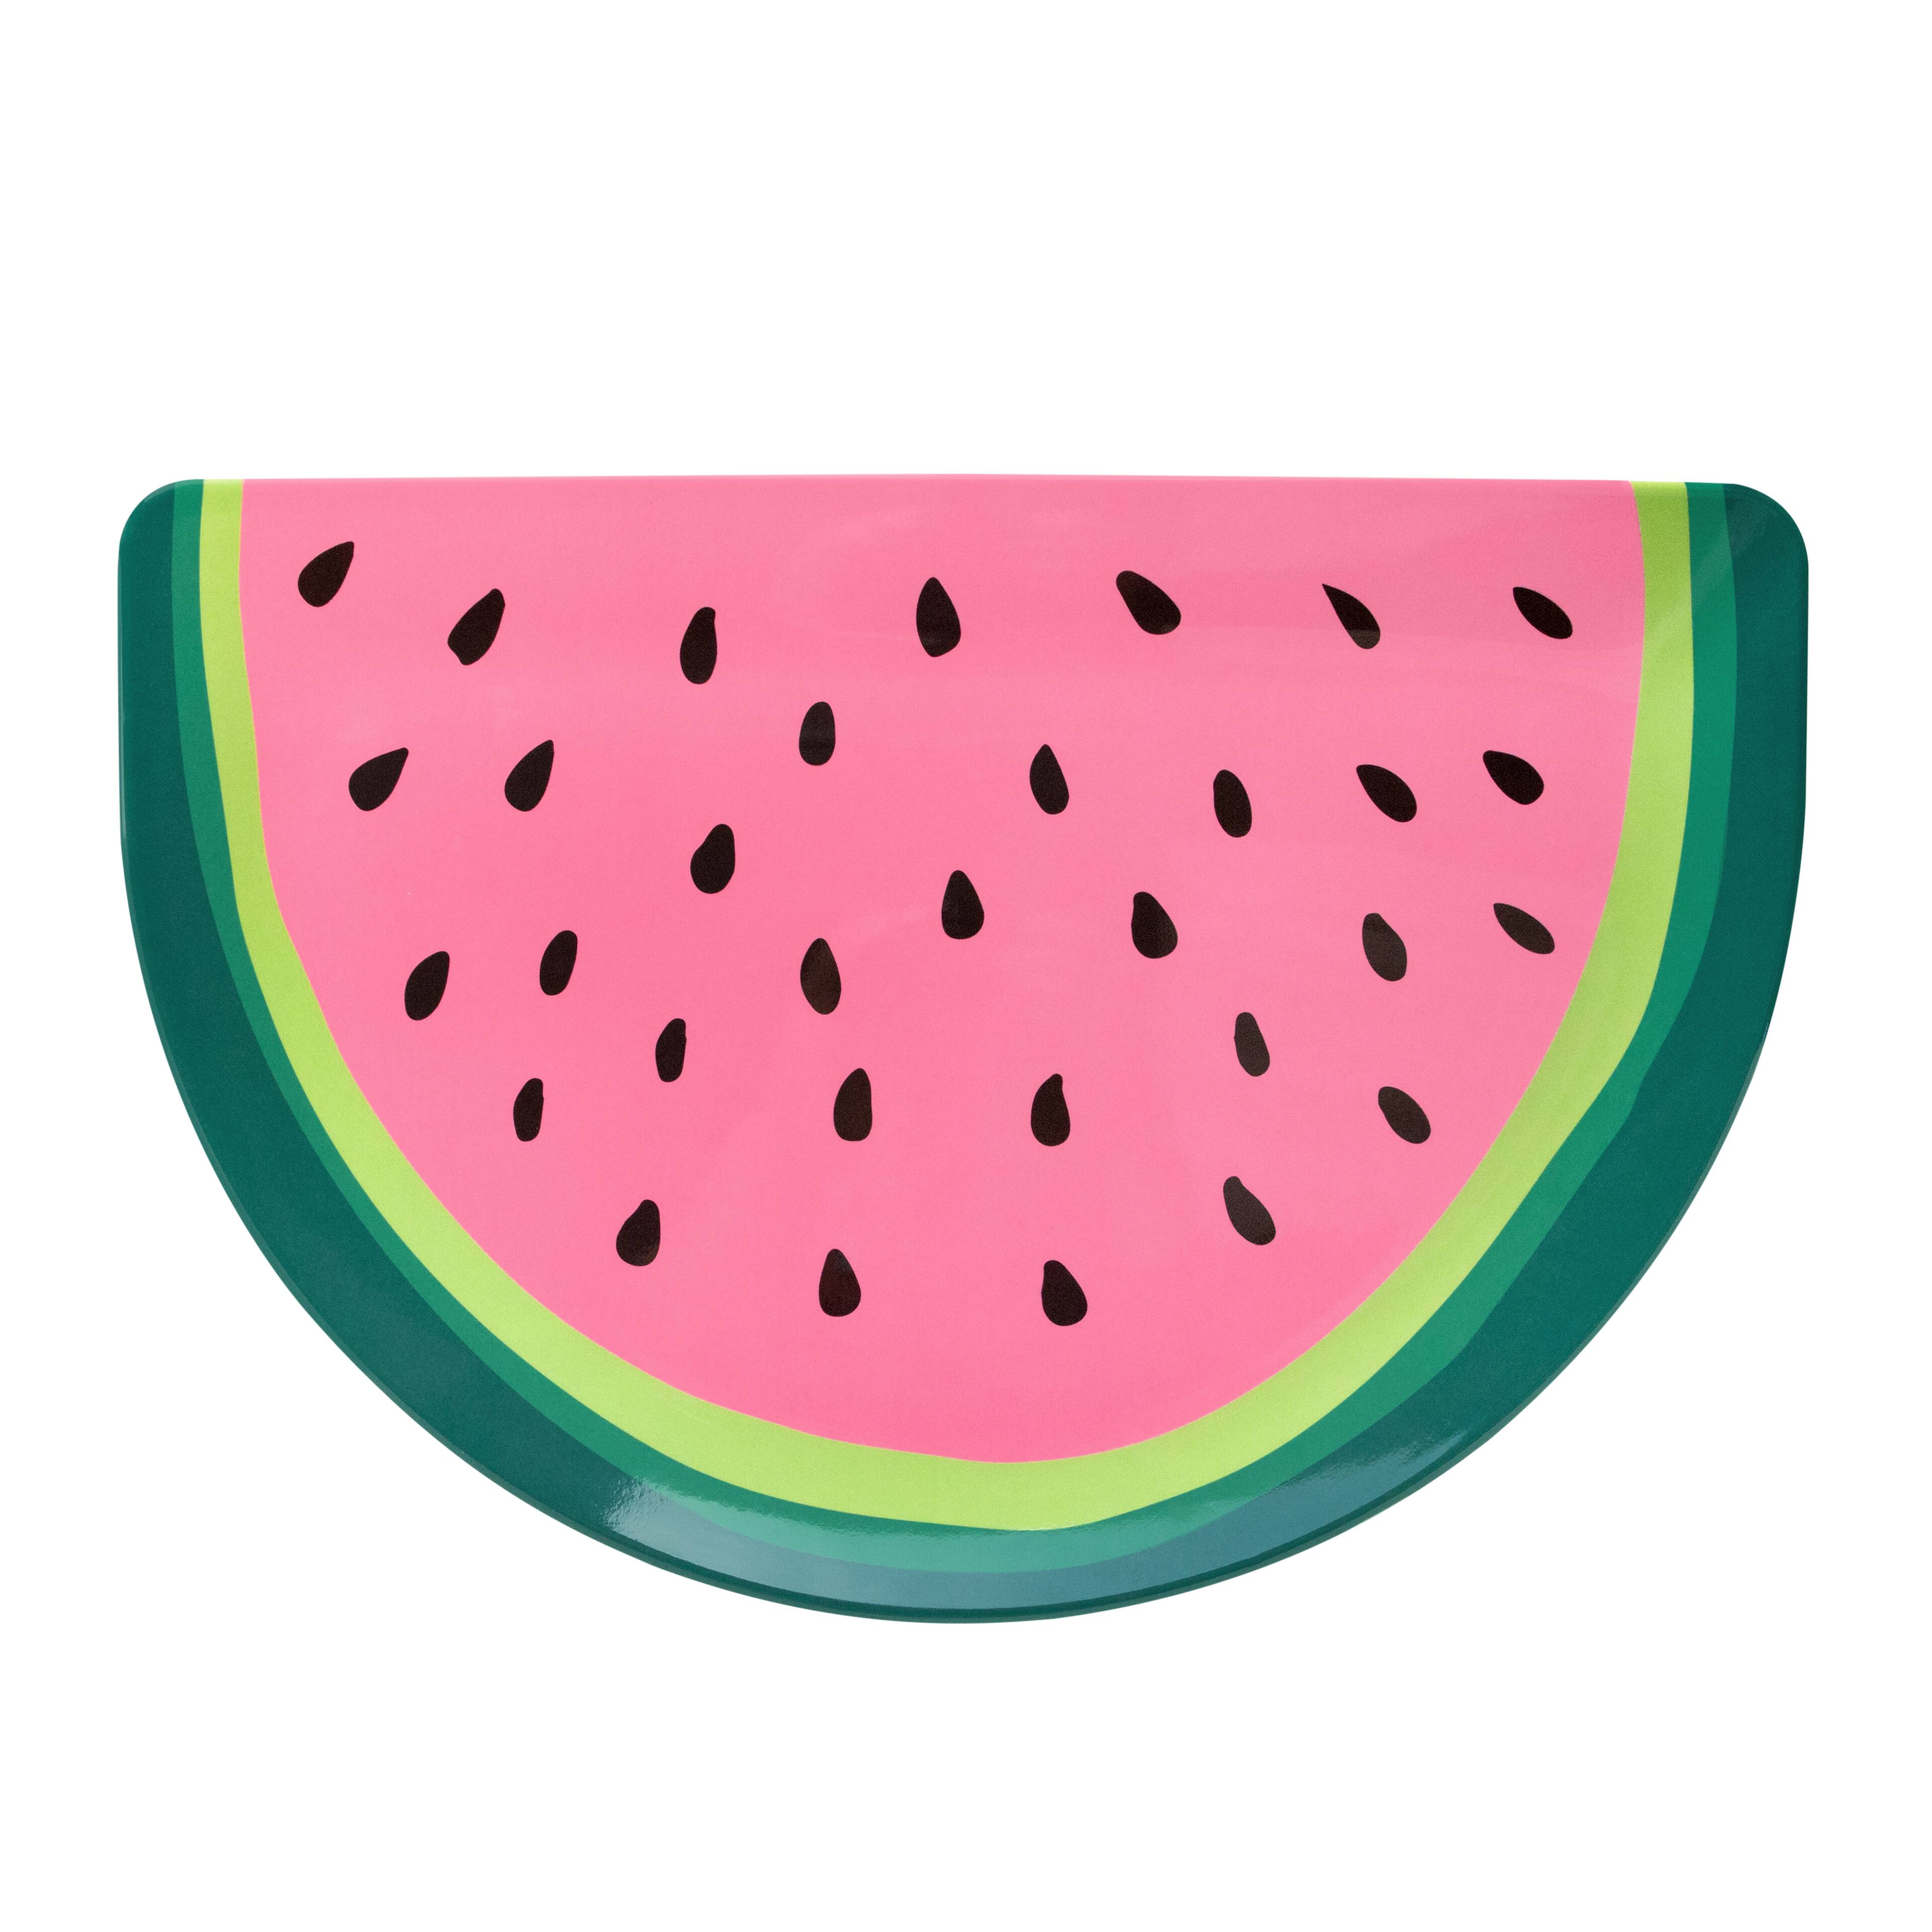 Cute pink watermelon download die cut PRINTABLE DIE CUTS